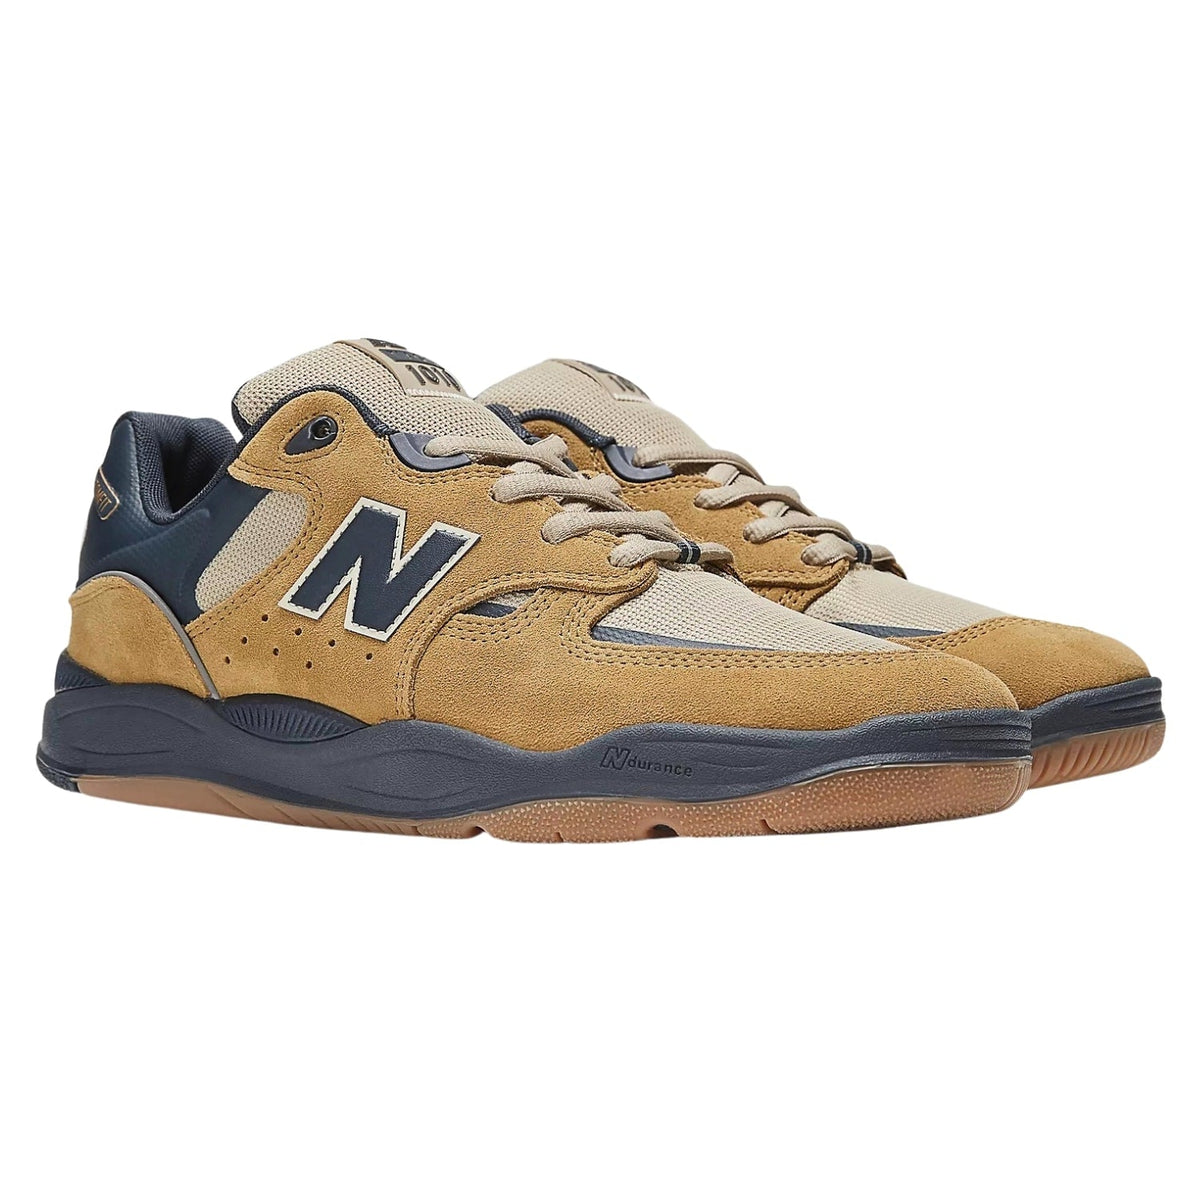 New Balance Numeric Nm1010 Tiago Lemos Skate Shoes - Wheat/Navy - Mens Skate Shoes by New Balance Numeric